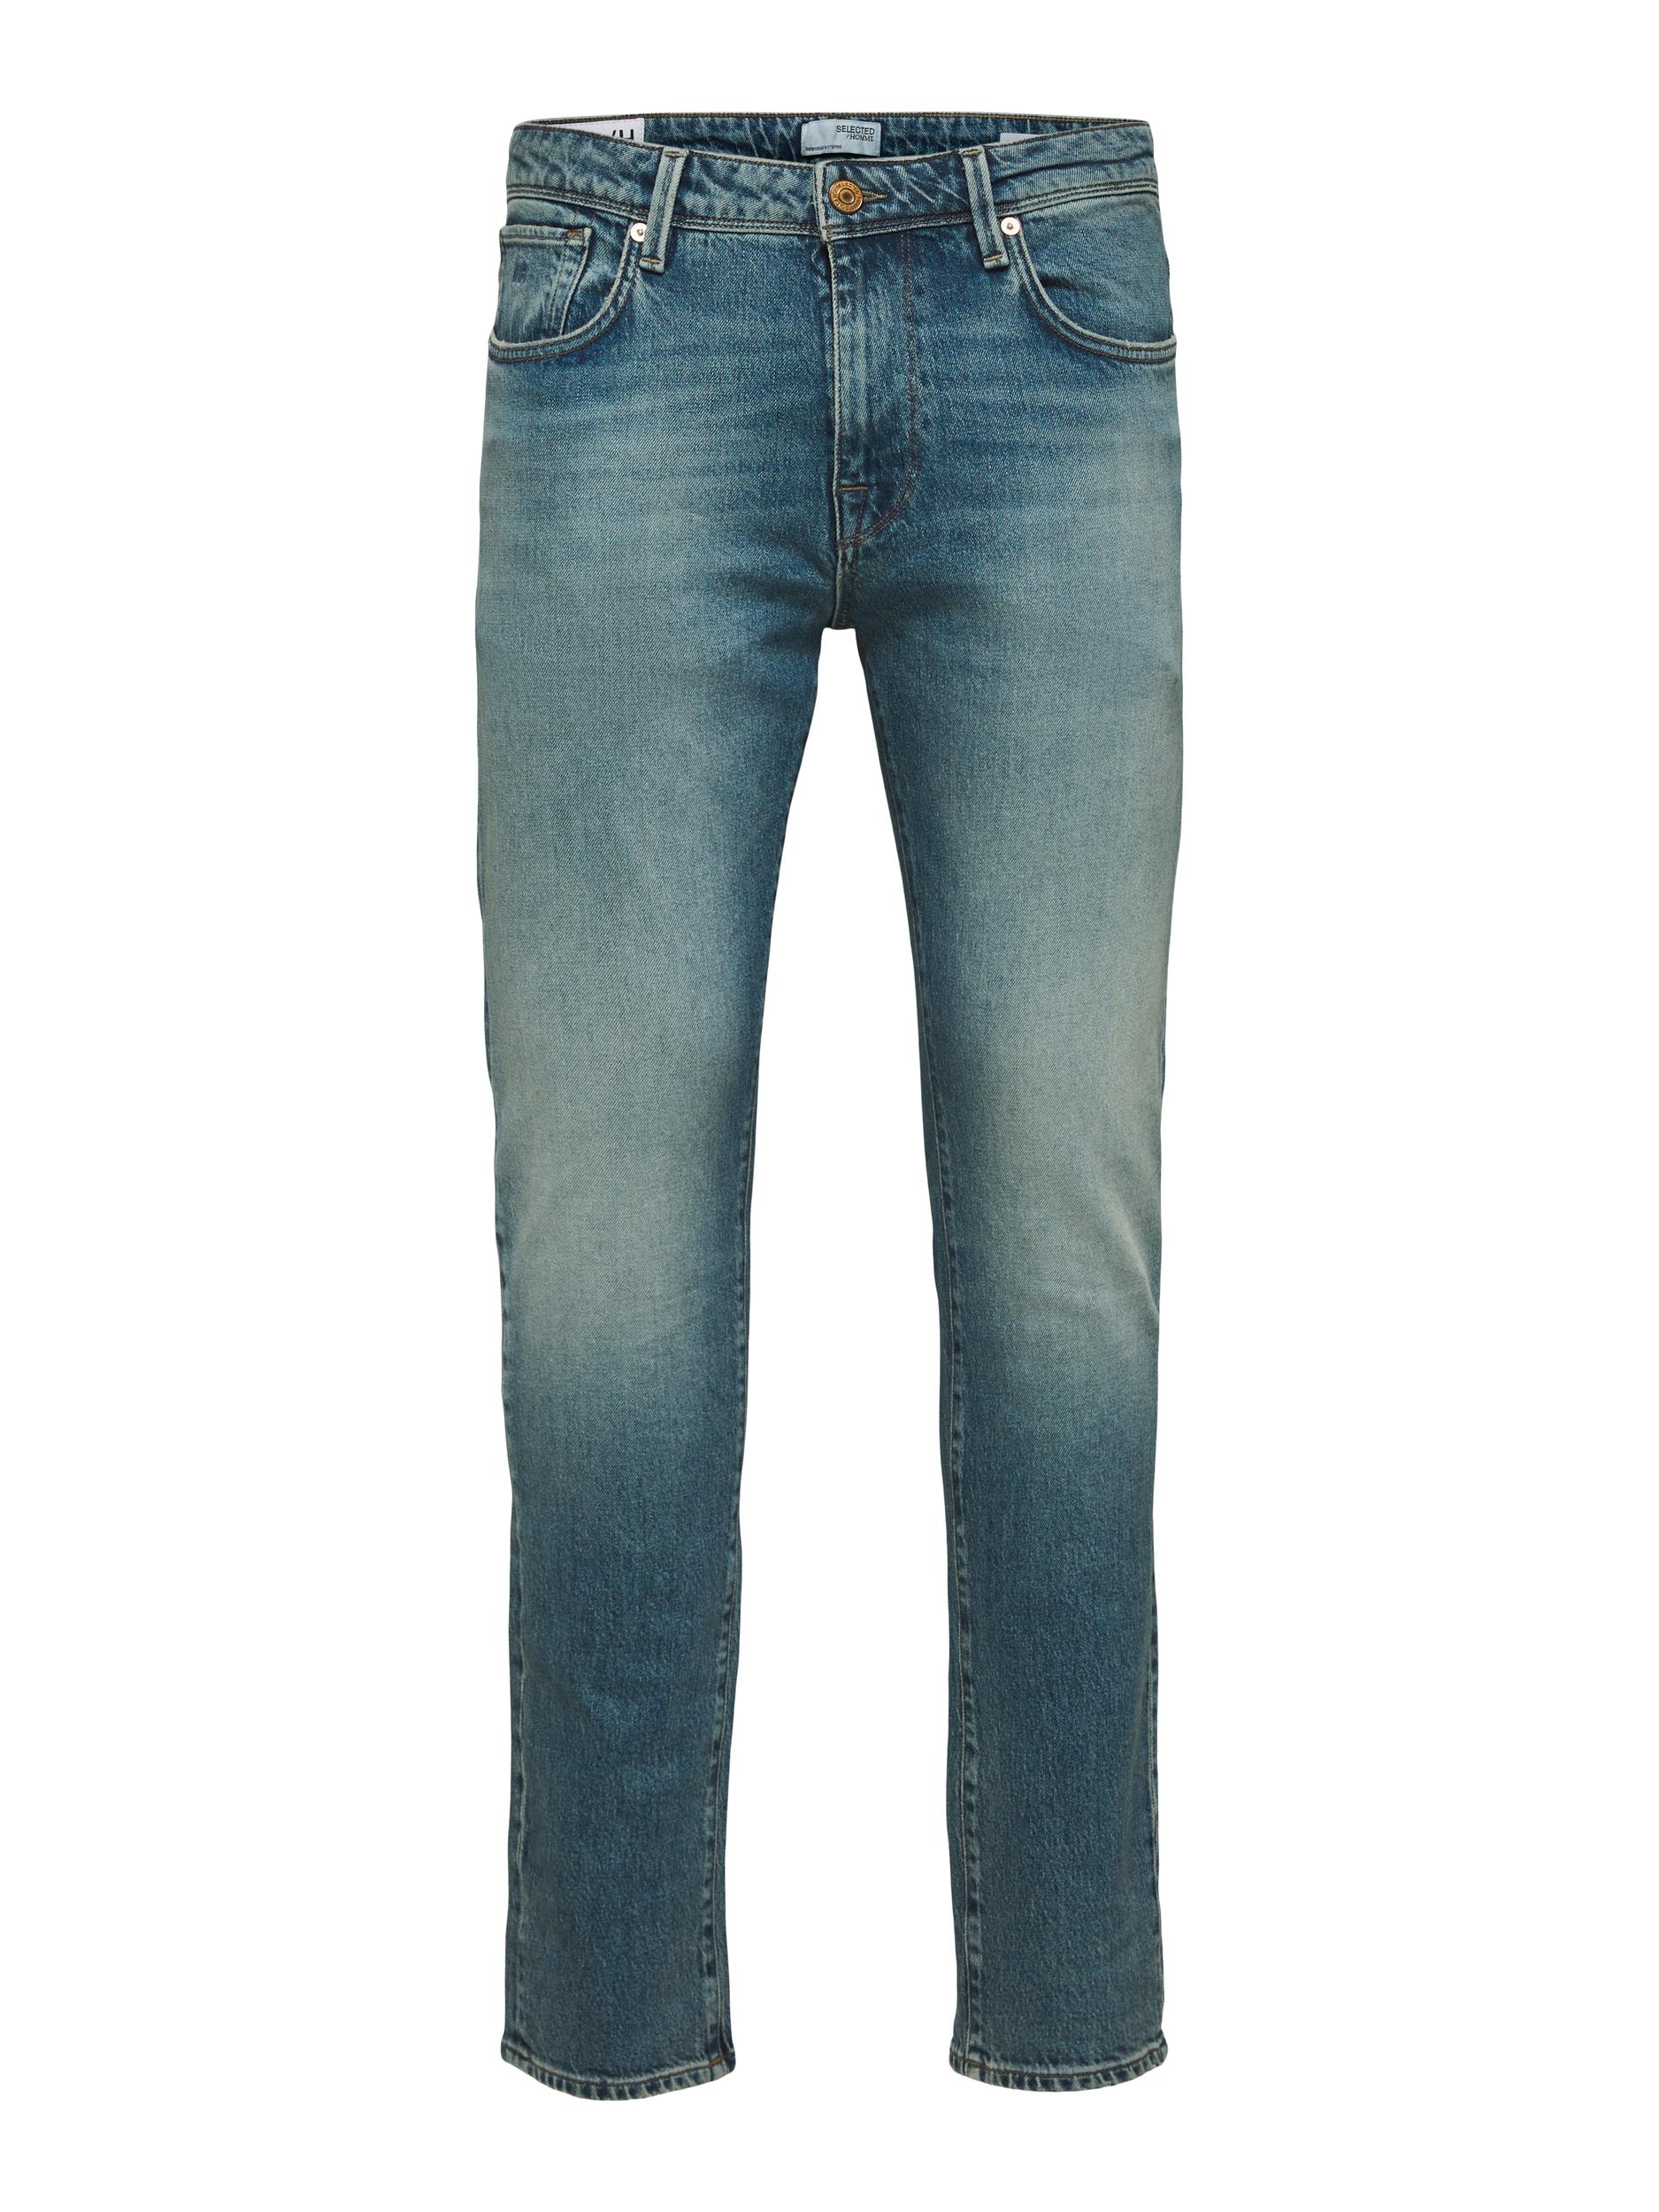 Slim-Leon Jeans, Light Blue Denim, W38/L34